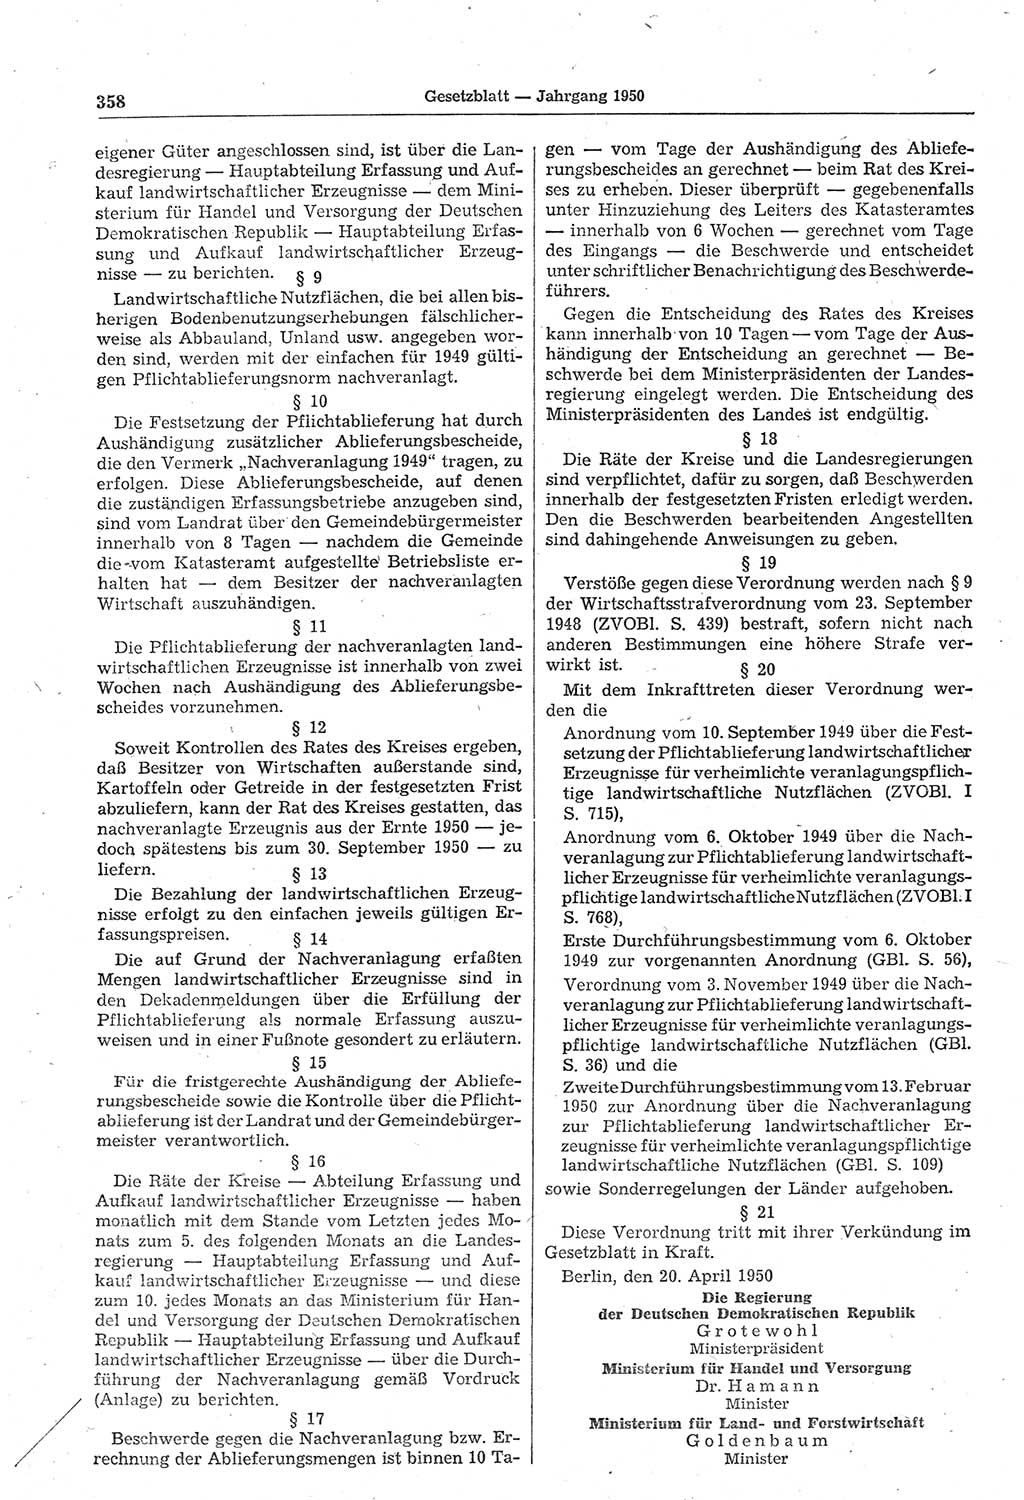 Gesetzblatt (GBl.) der Deutschen Demokratischen Republik (DDR) 1950, Seite 358 (GBl. DDR 1950, S. 358)